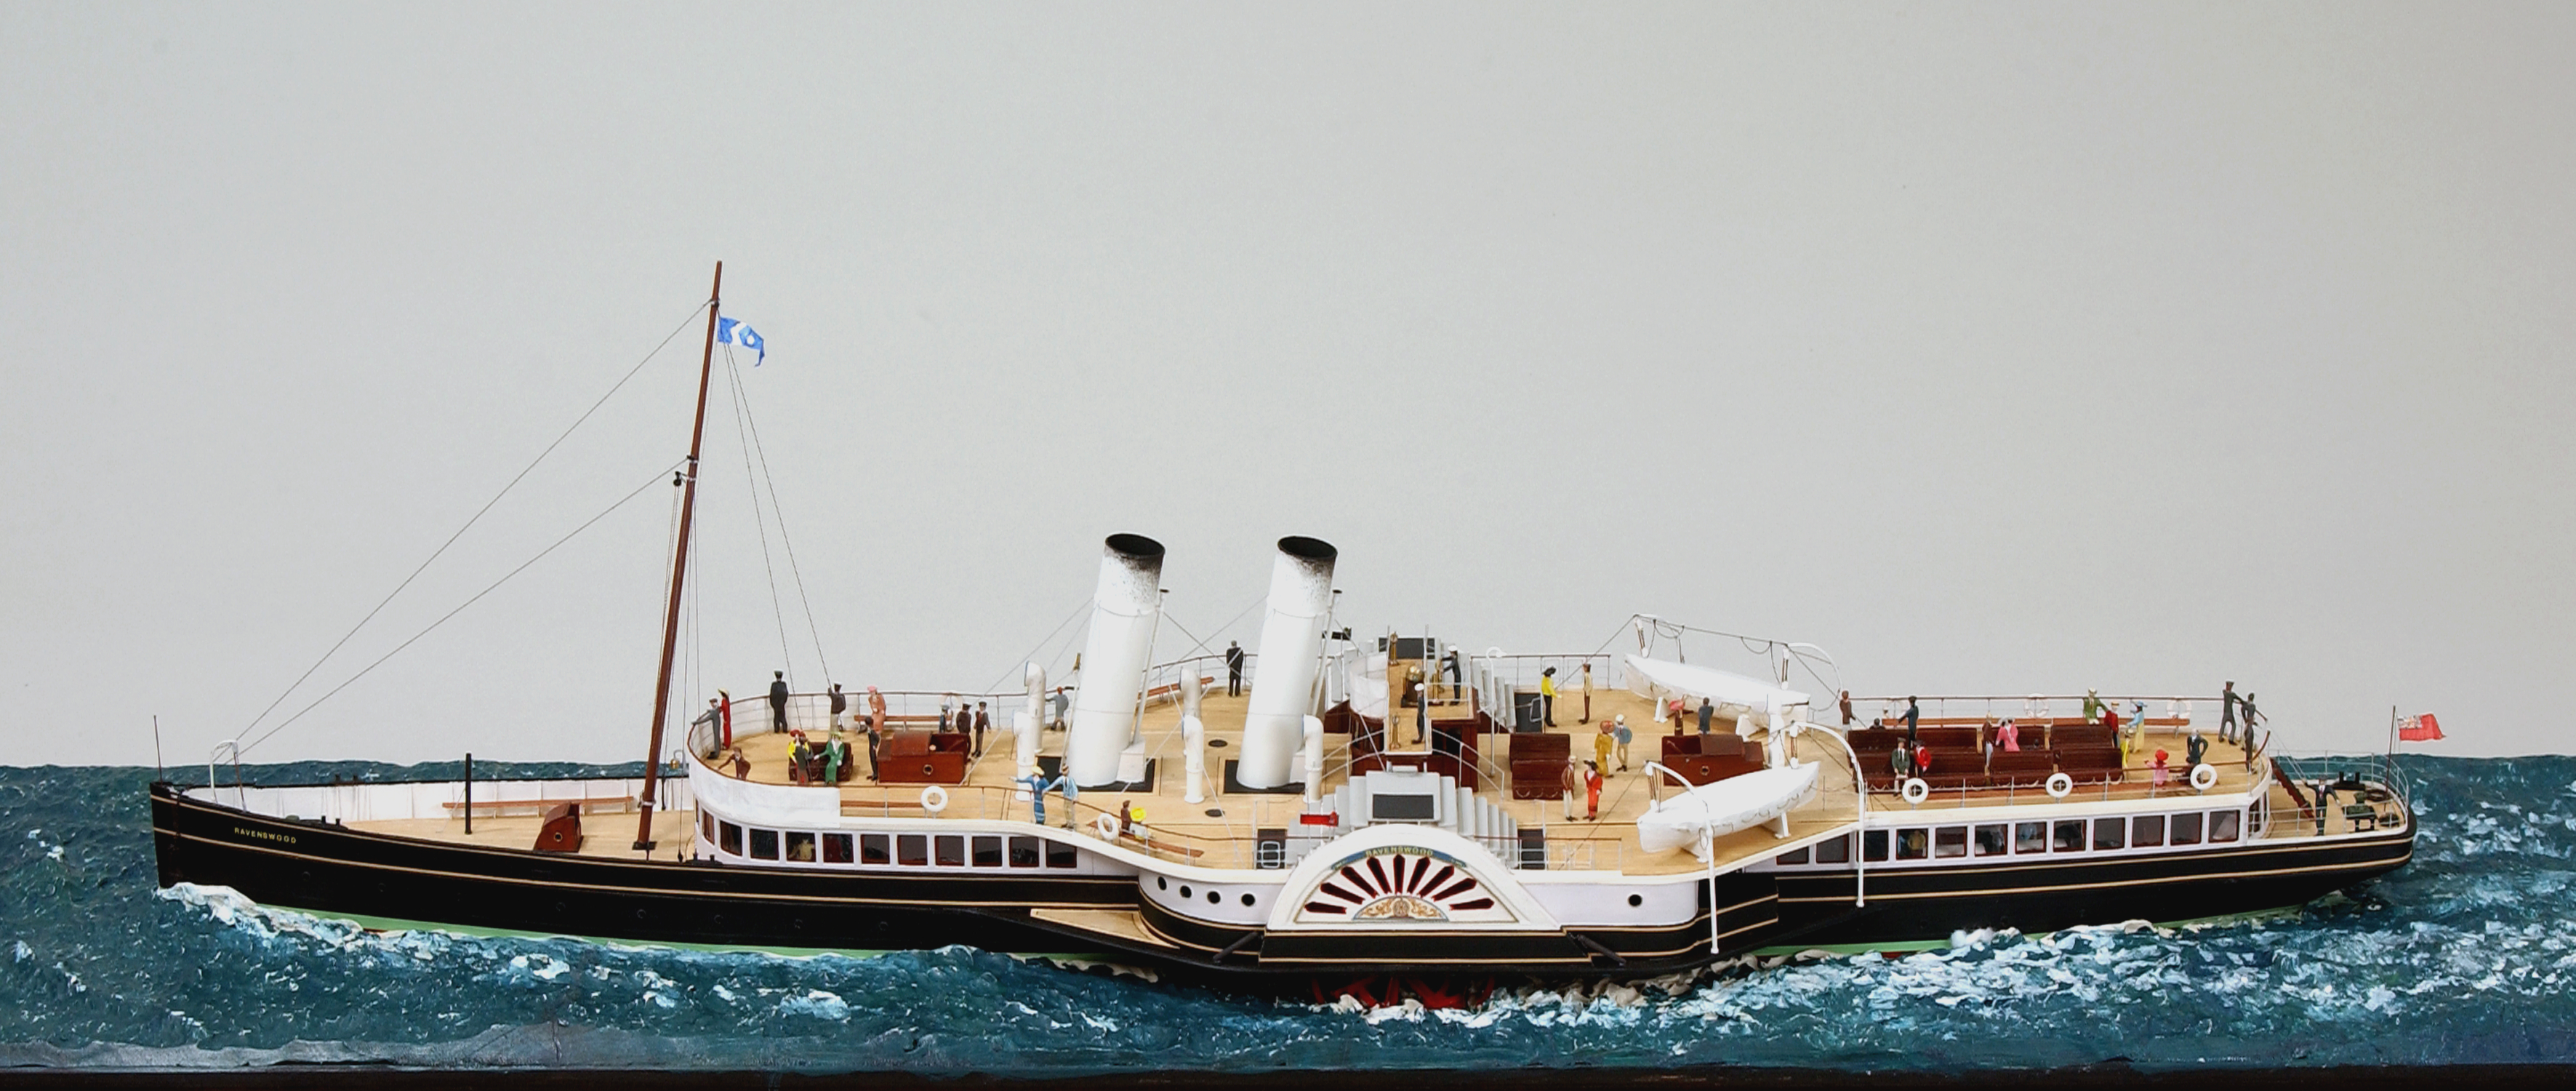 P.S. RAVENSWOOD, full hull ship model